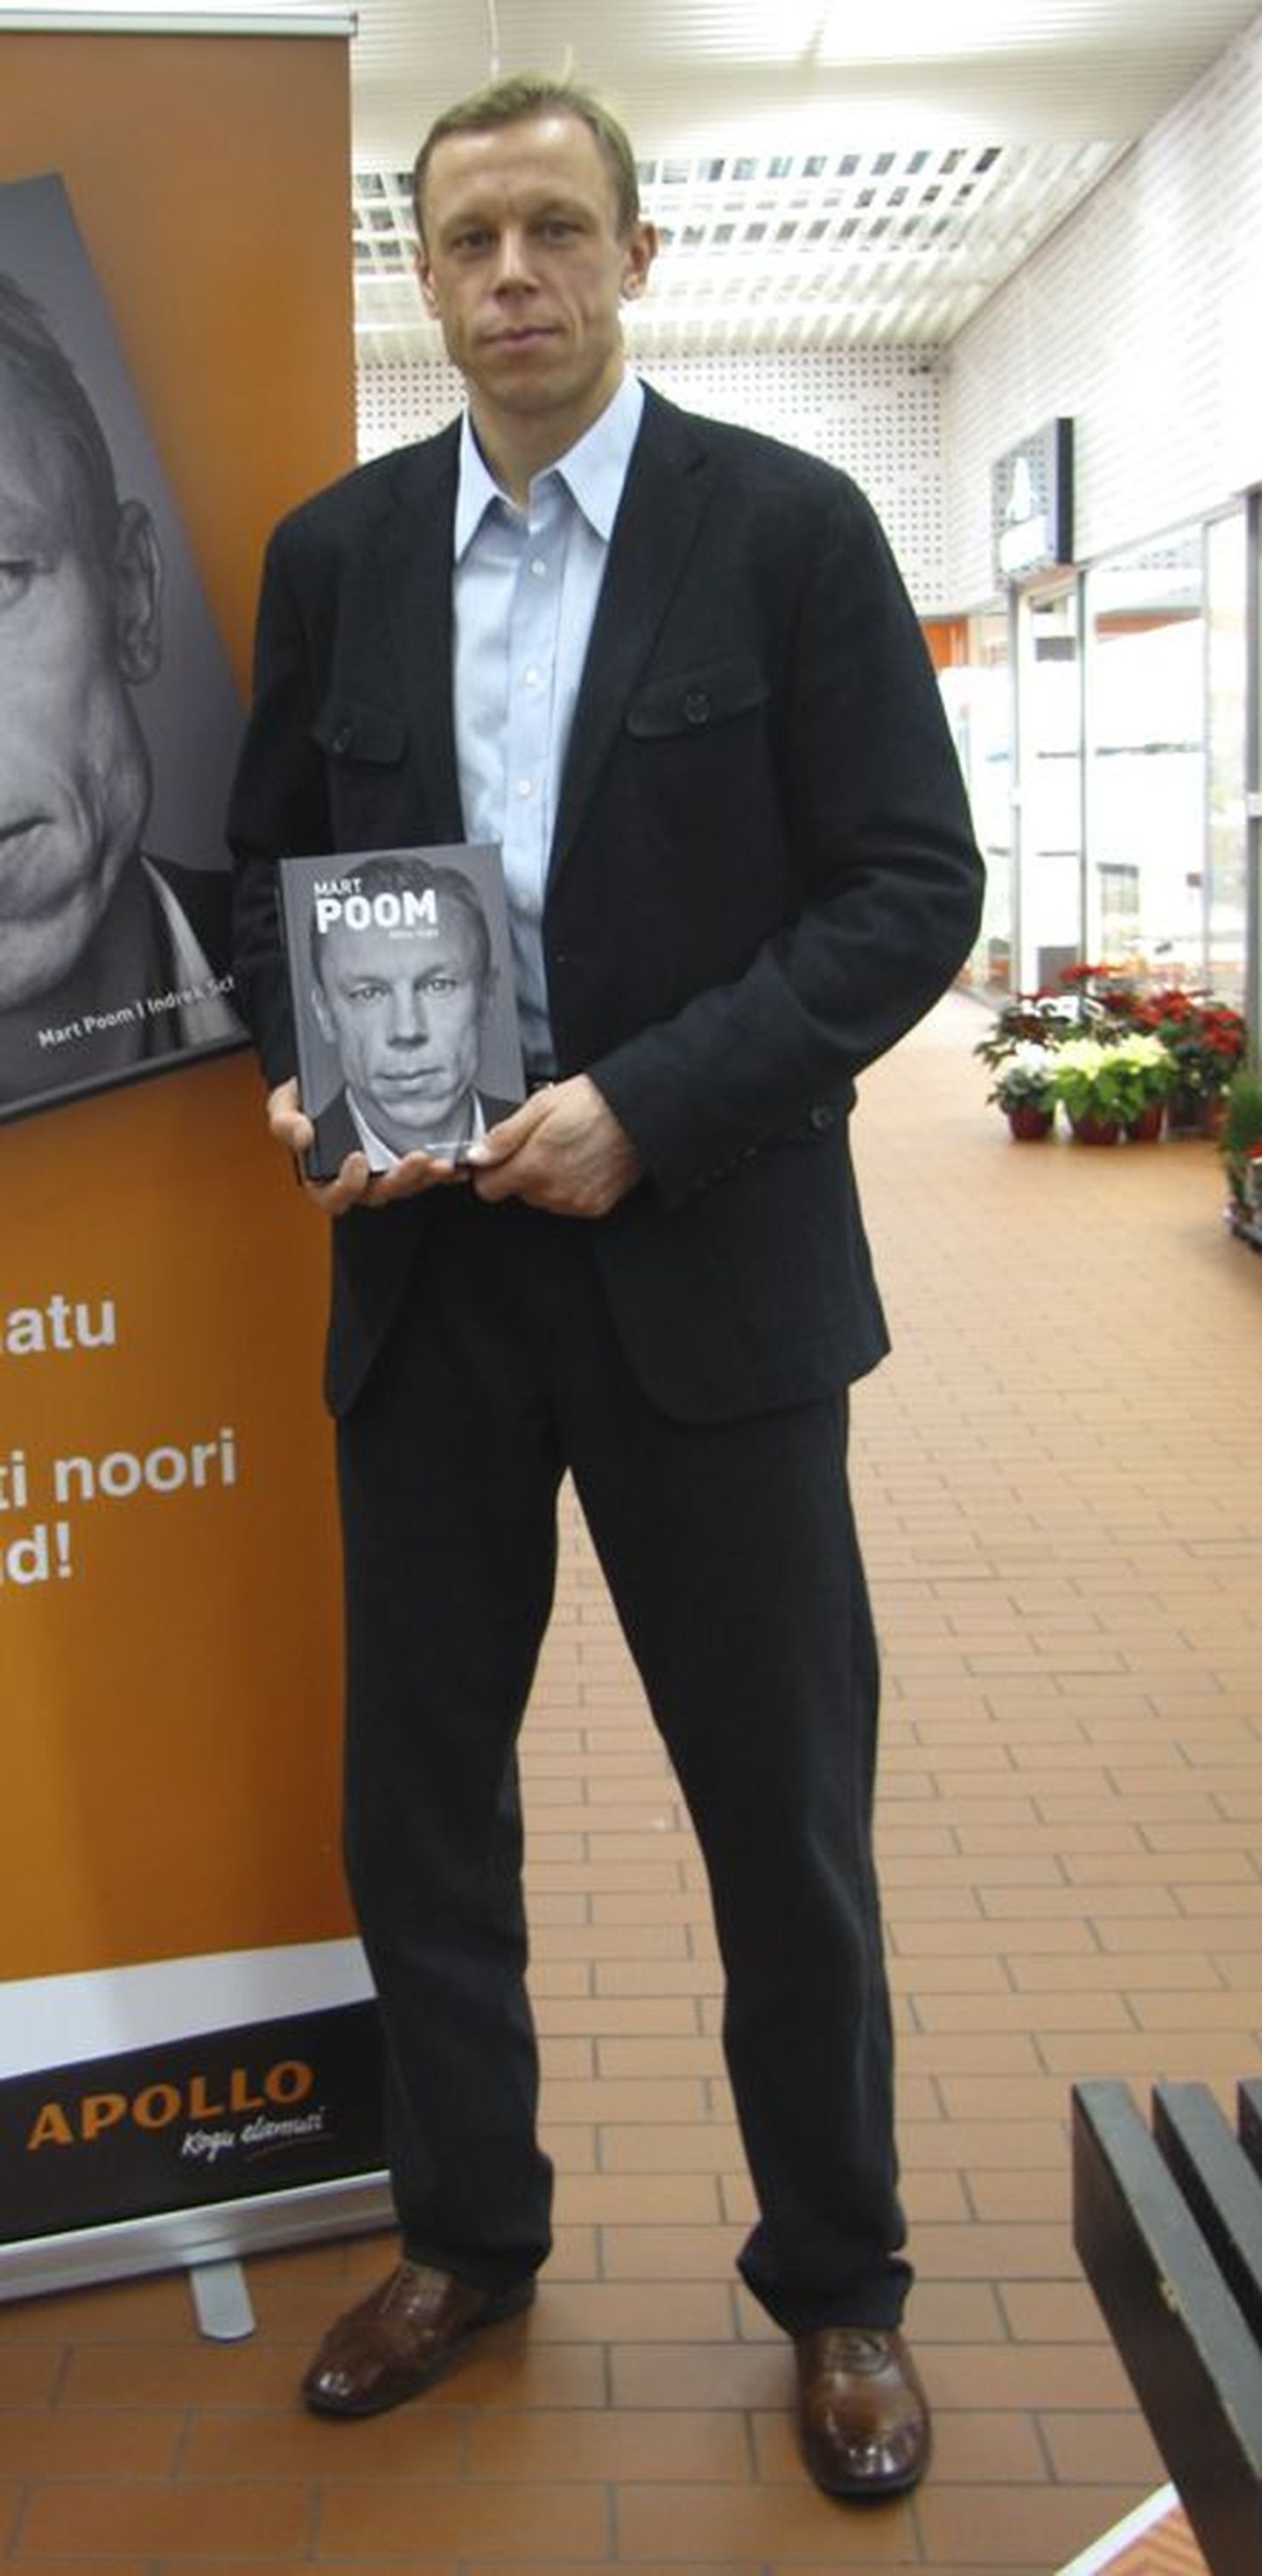 Läinud reedel käis Mart Poom Viljandis Uku keskuses oma raamatut esitlemas ja autogramme jagamas.